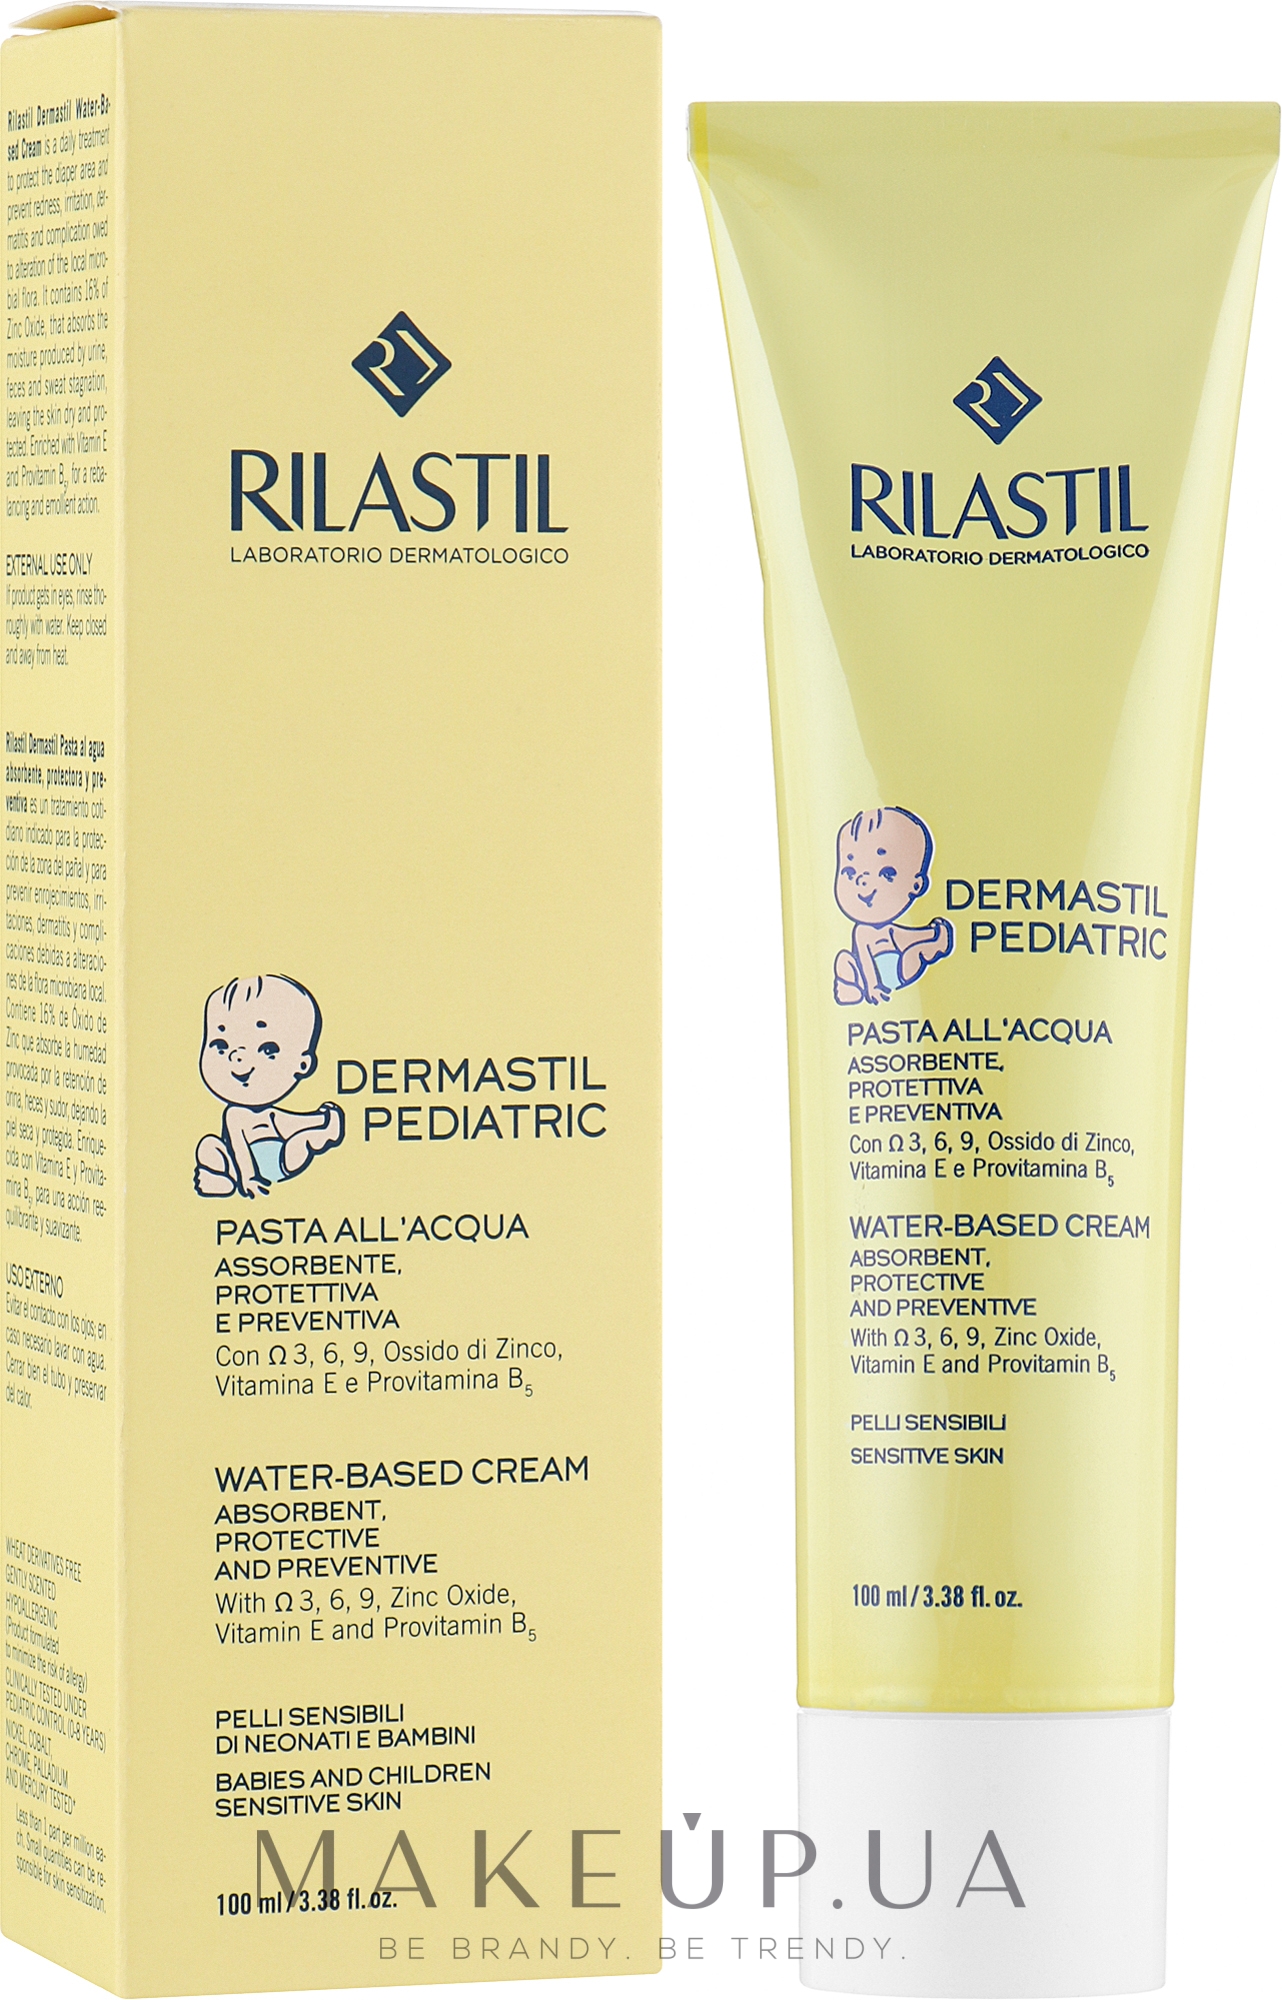 Захисний крем на водній основі для зони підгузків - Rilastil Dermastil Pediatric Water-Based Cream — фото 100ml